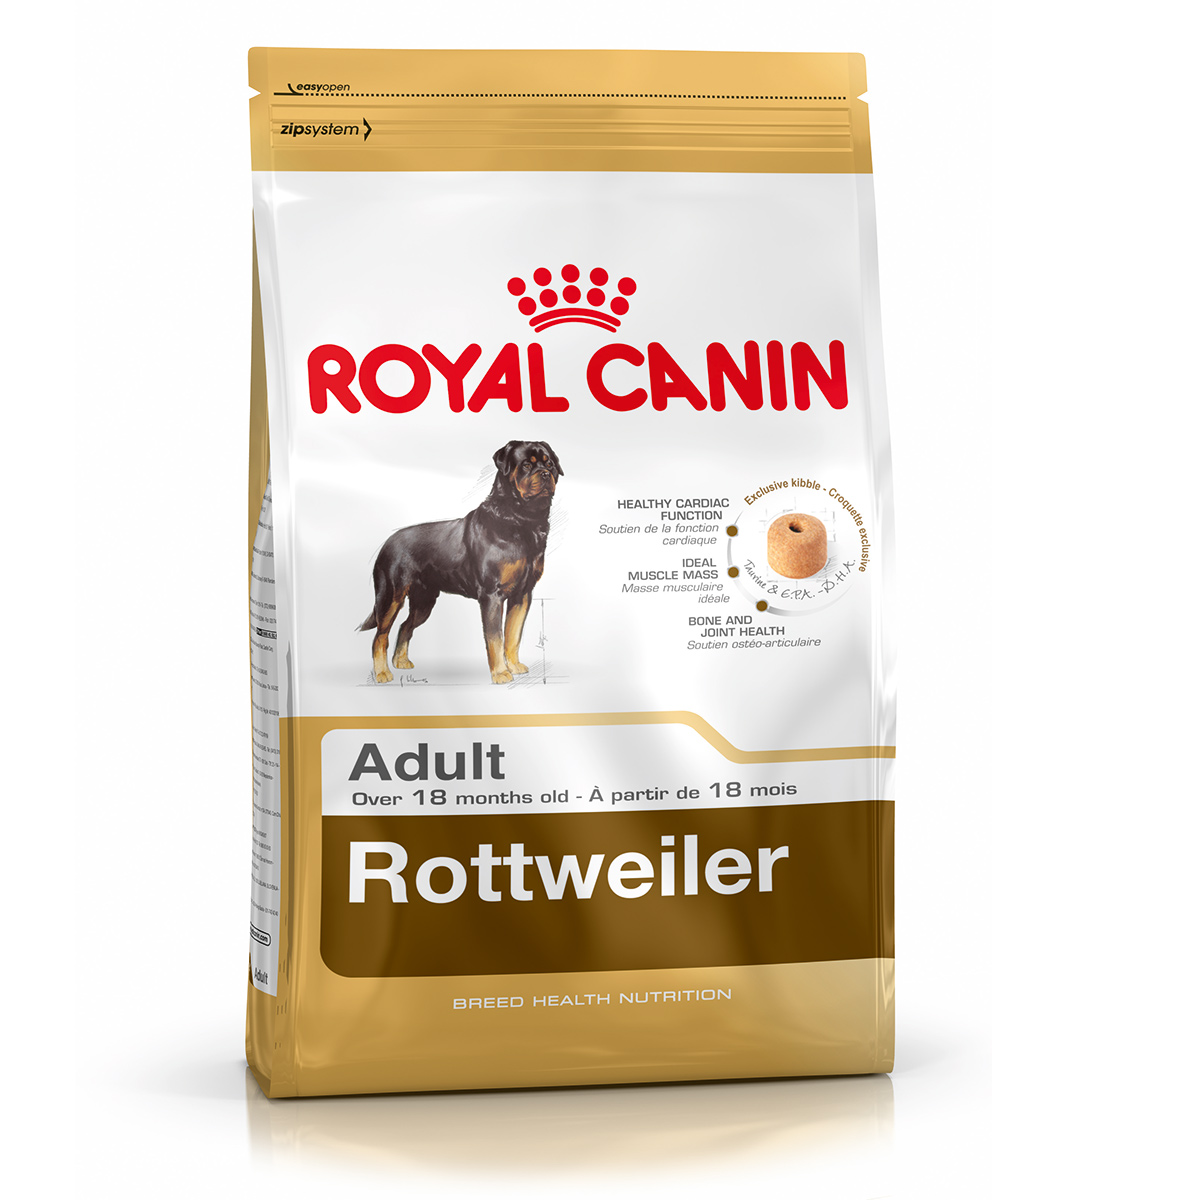 Royal Canin Rottweiler Adult hrana uscata caine, 3 kg